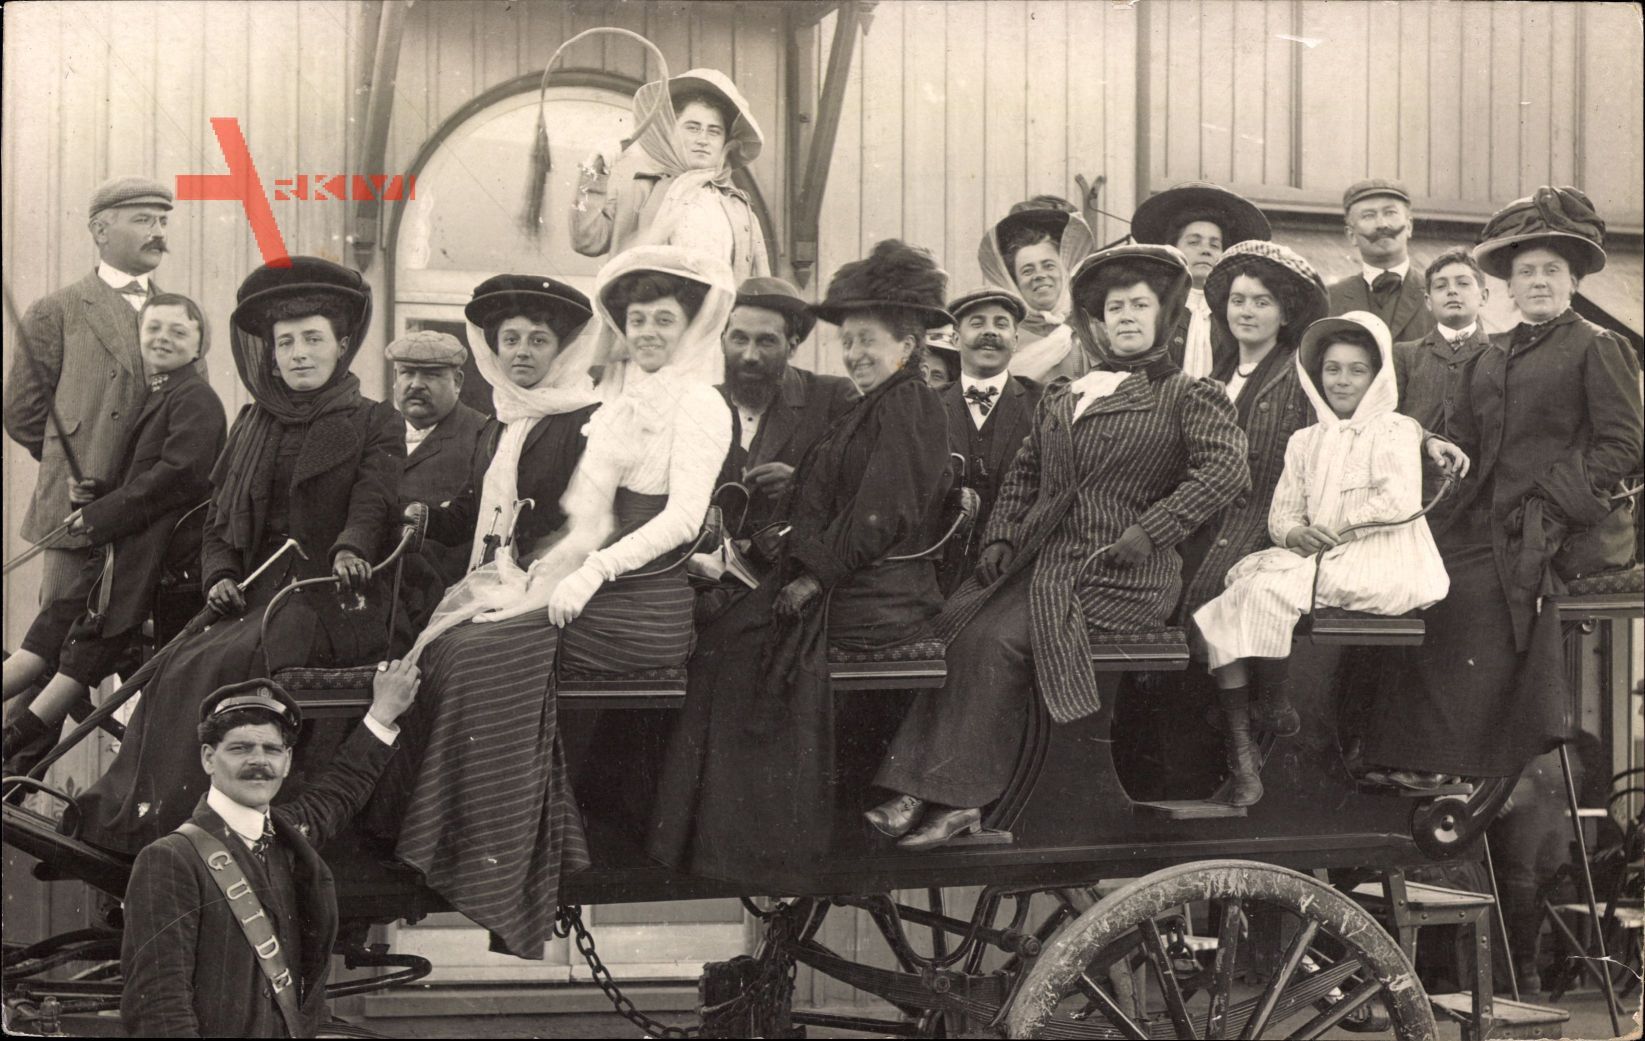 Passagiere auf einer Pferdekutsche, Frankreich, Frauen mit Hüten